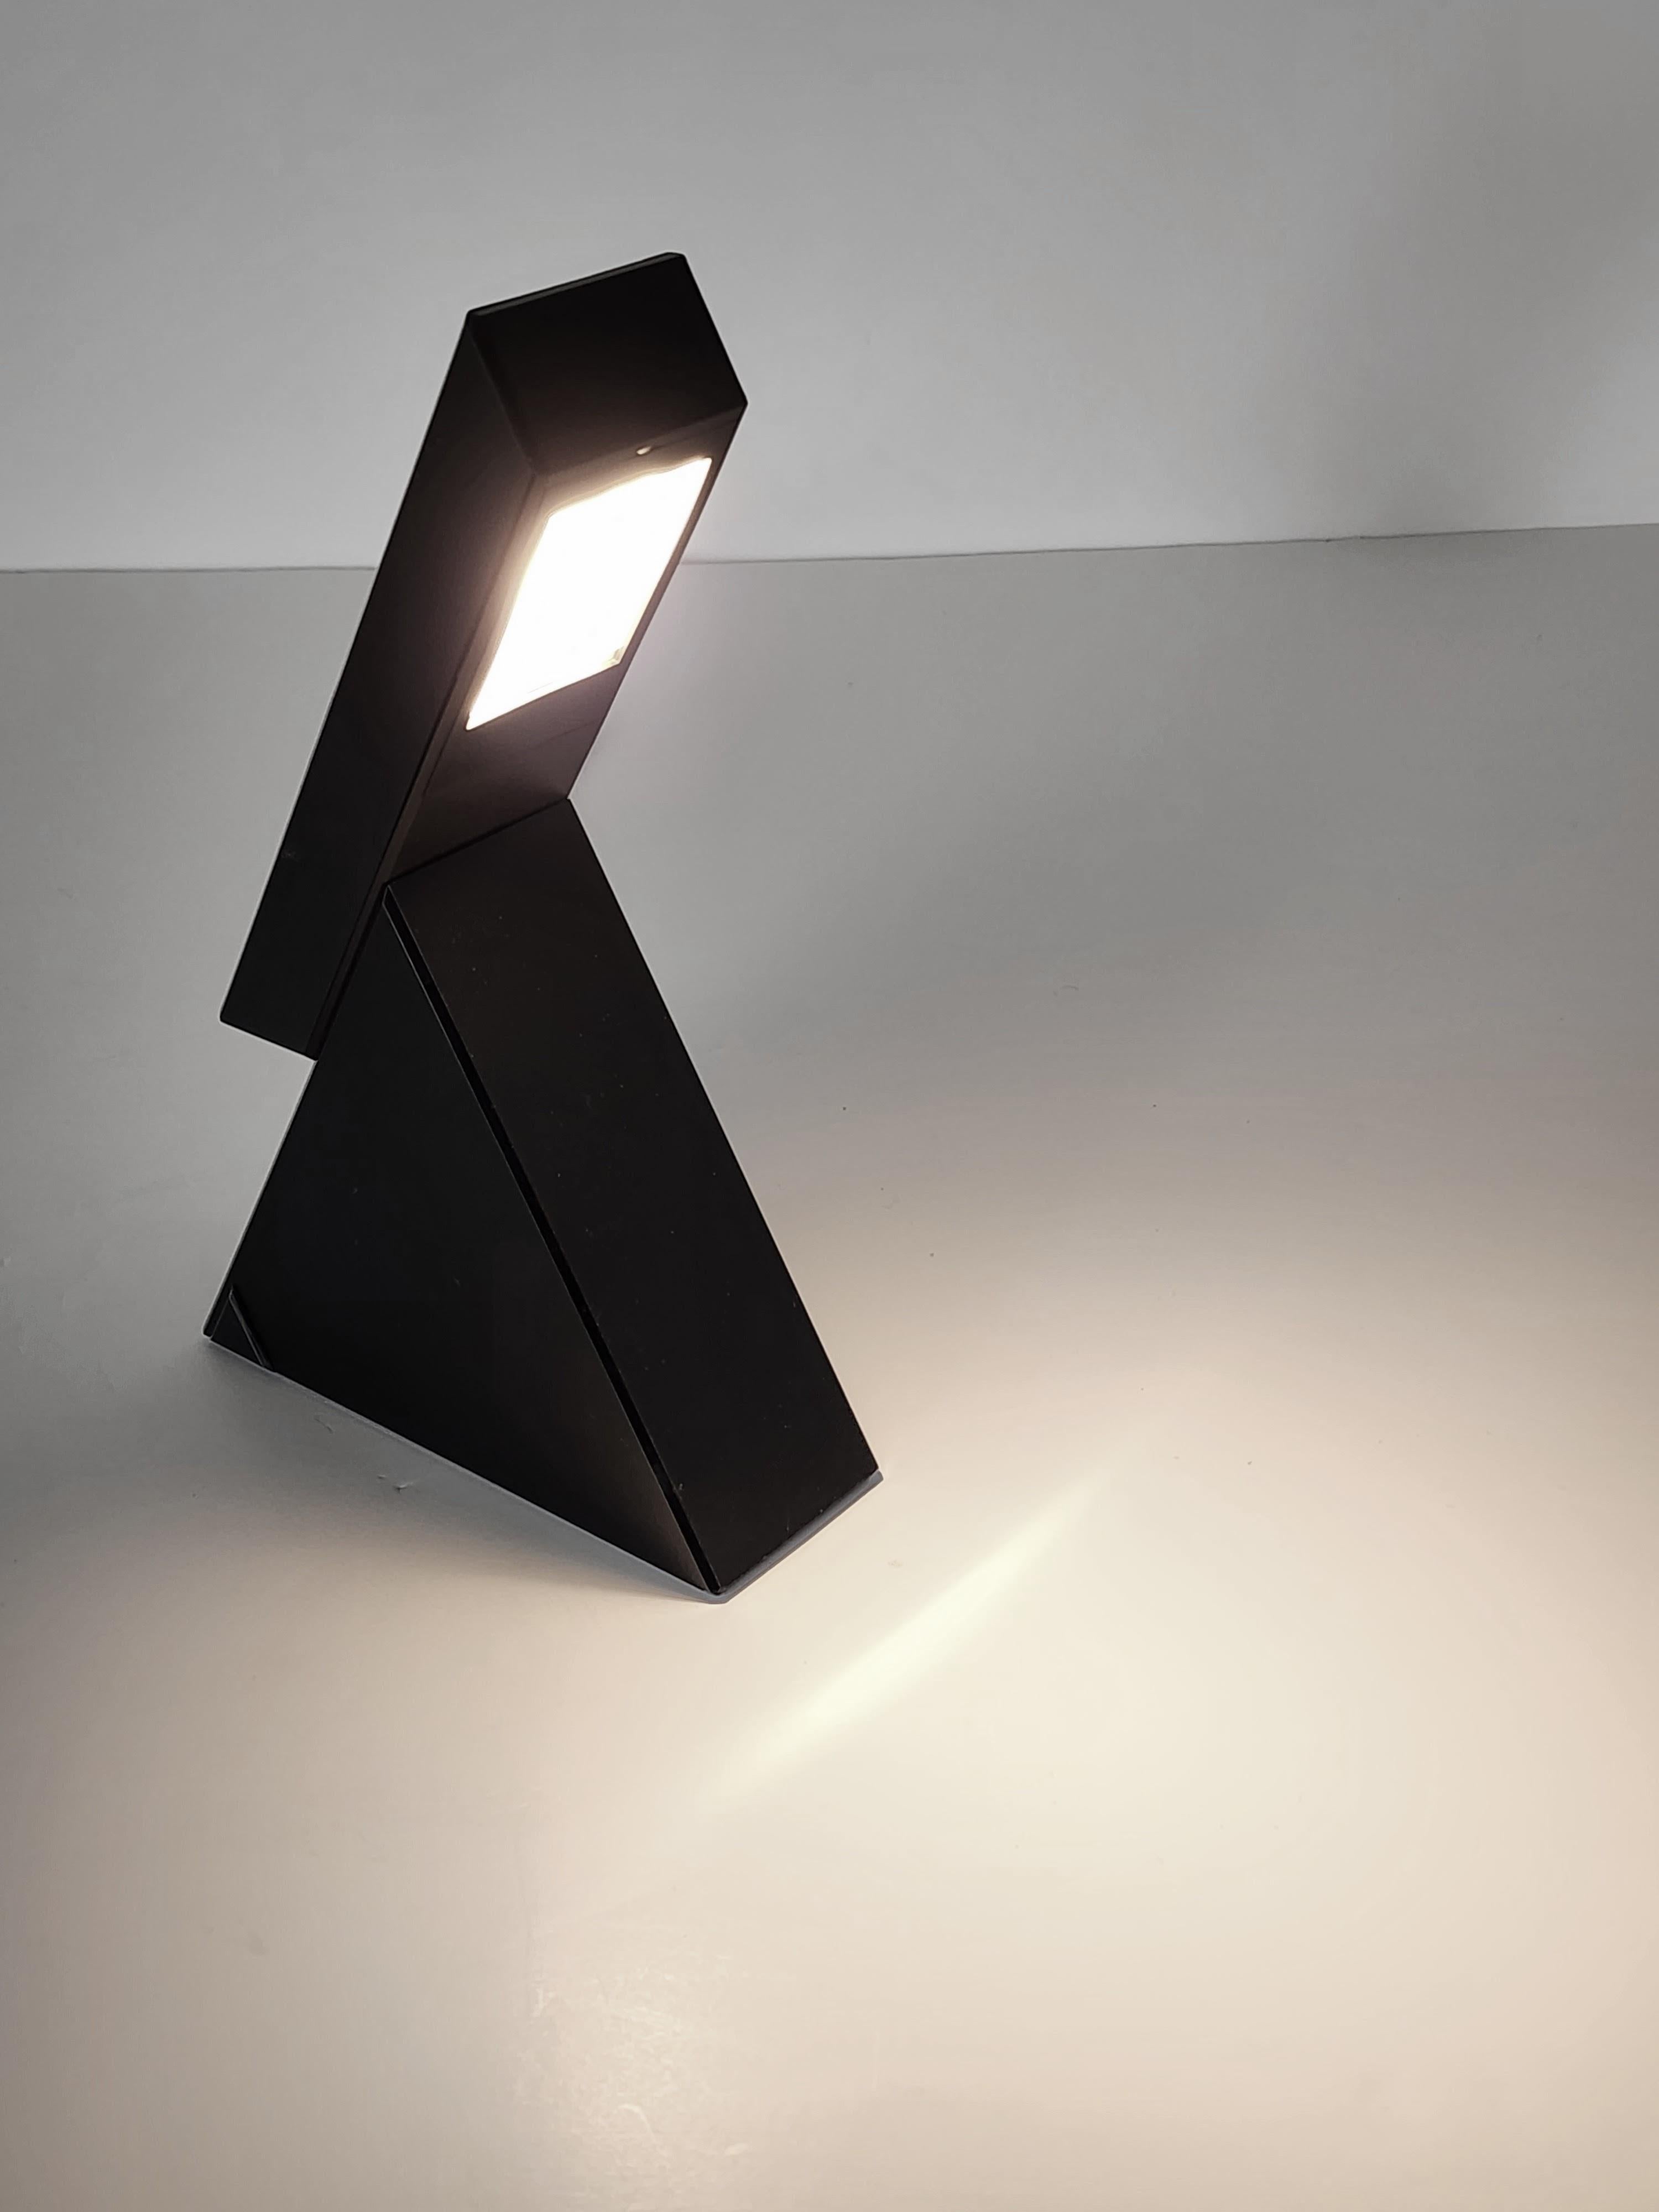 Un design audacieux et ingénieux de Mario Bertorelle pour JM RDM , Italie . 

La lumière s'allume et s'éteint en faisant glisser la partie plate à l'arrière.  base en forme de pyramide . Voir la vidéo . 

De plus, il a deux intensités, une puissance